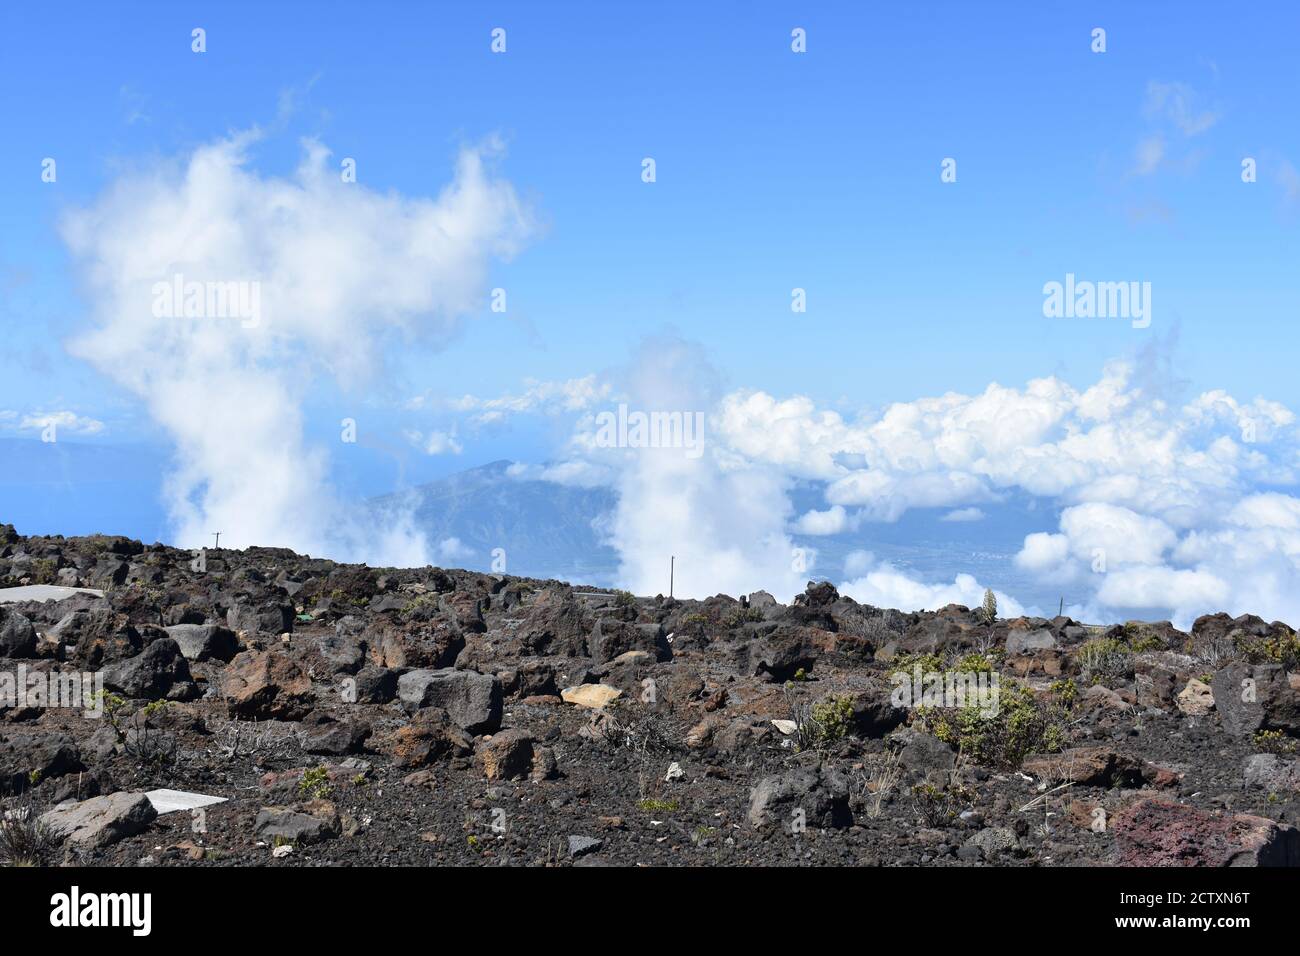 Immagine di ipnotico paesaggio nuvoloso, natura panoramica dell'isola hawaiana di Maui Foto Stock